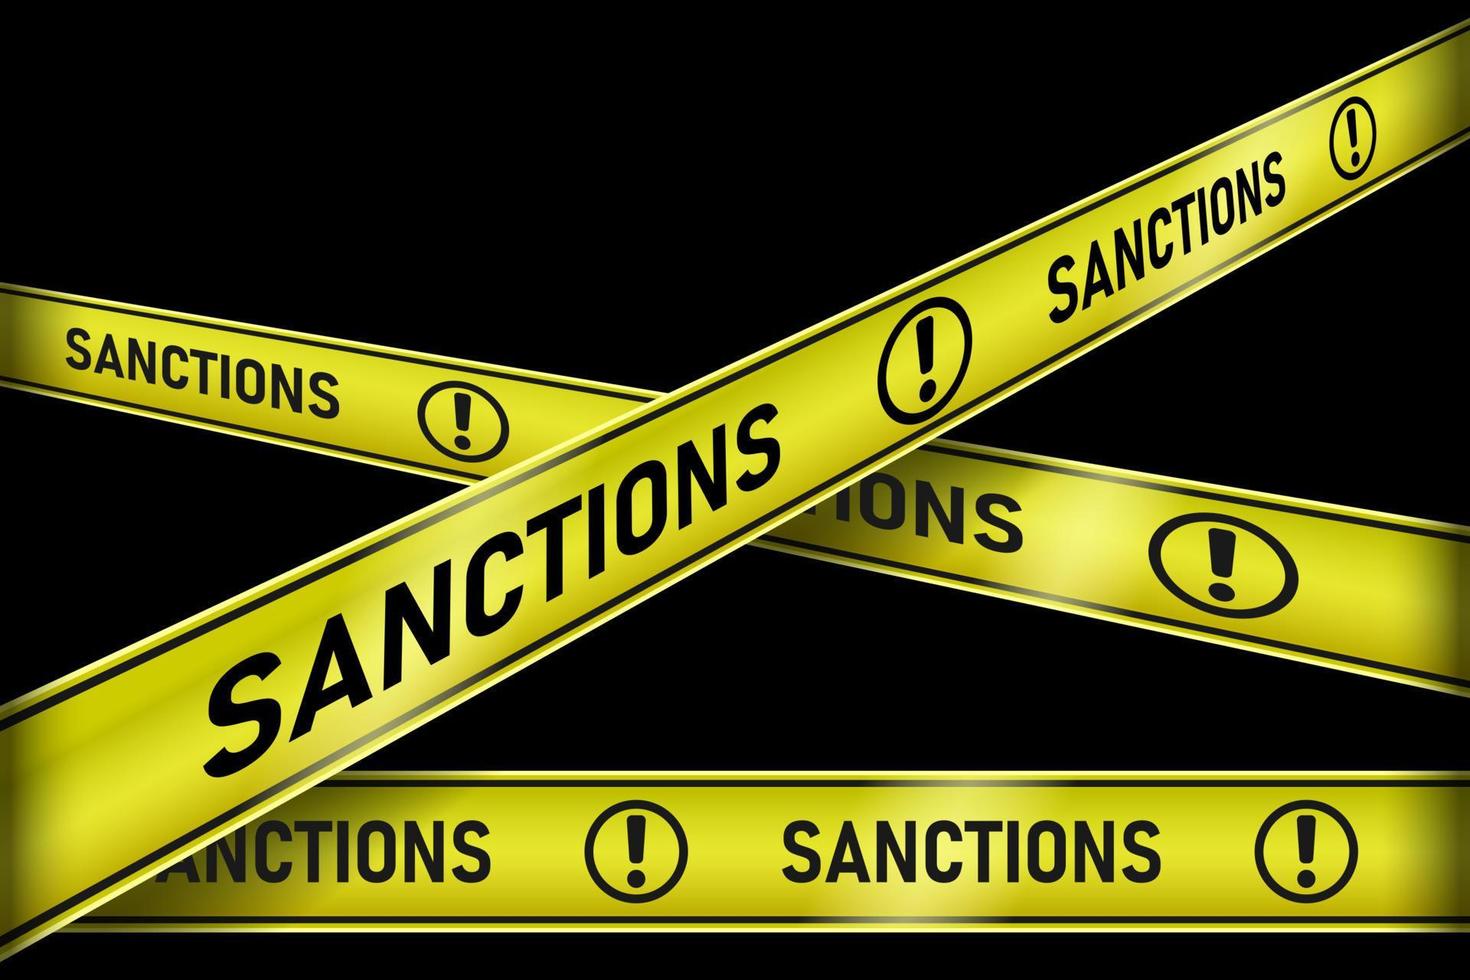 fitas amarelas sanções visão em perspectiva realista fundo preto isolado vetor